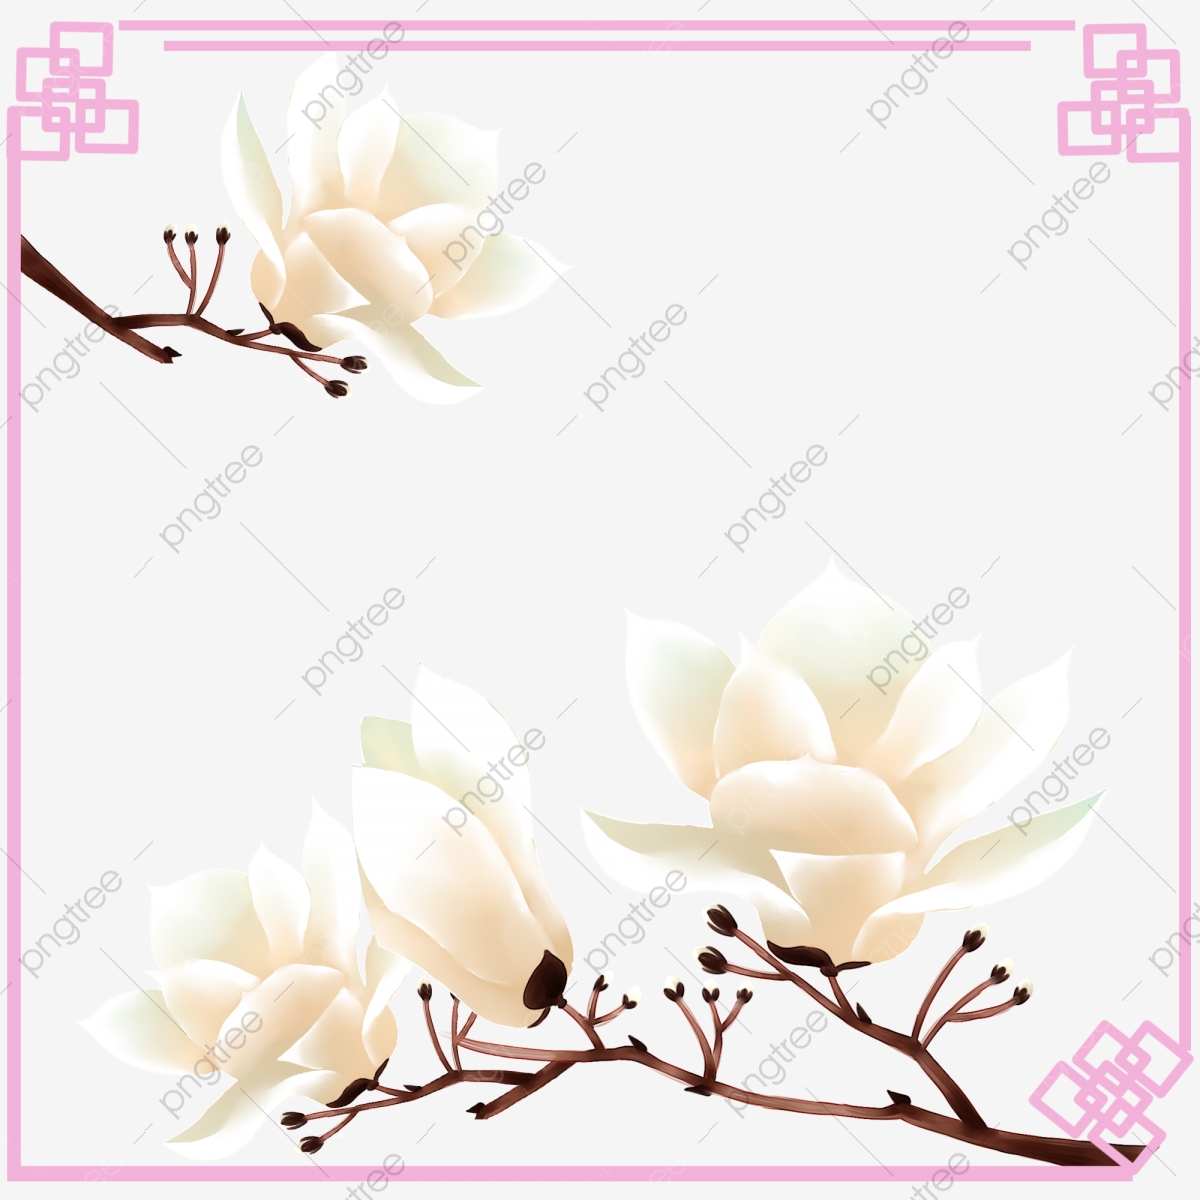 magnolia clipart border